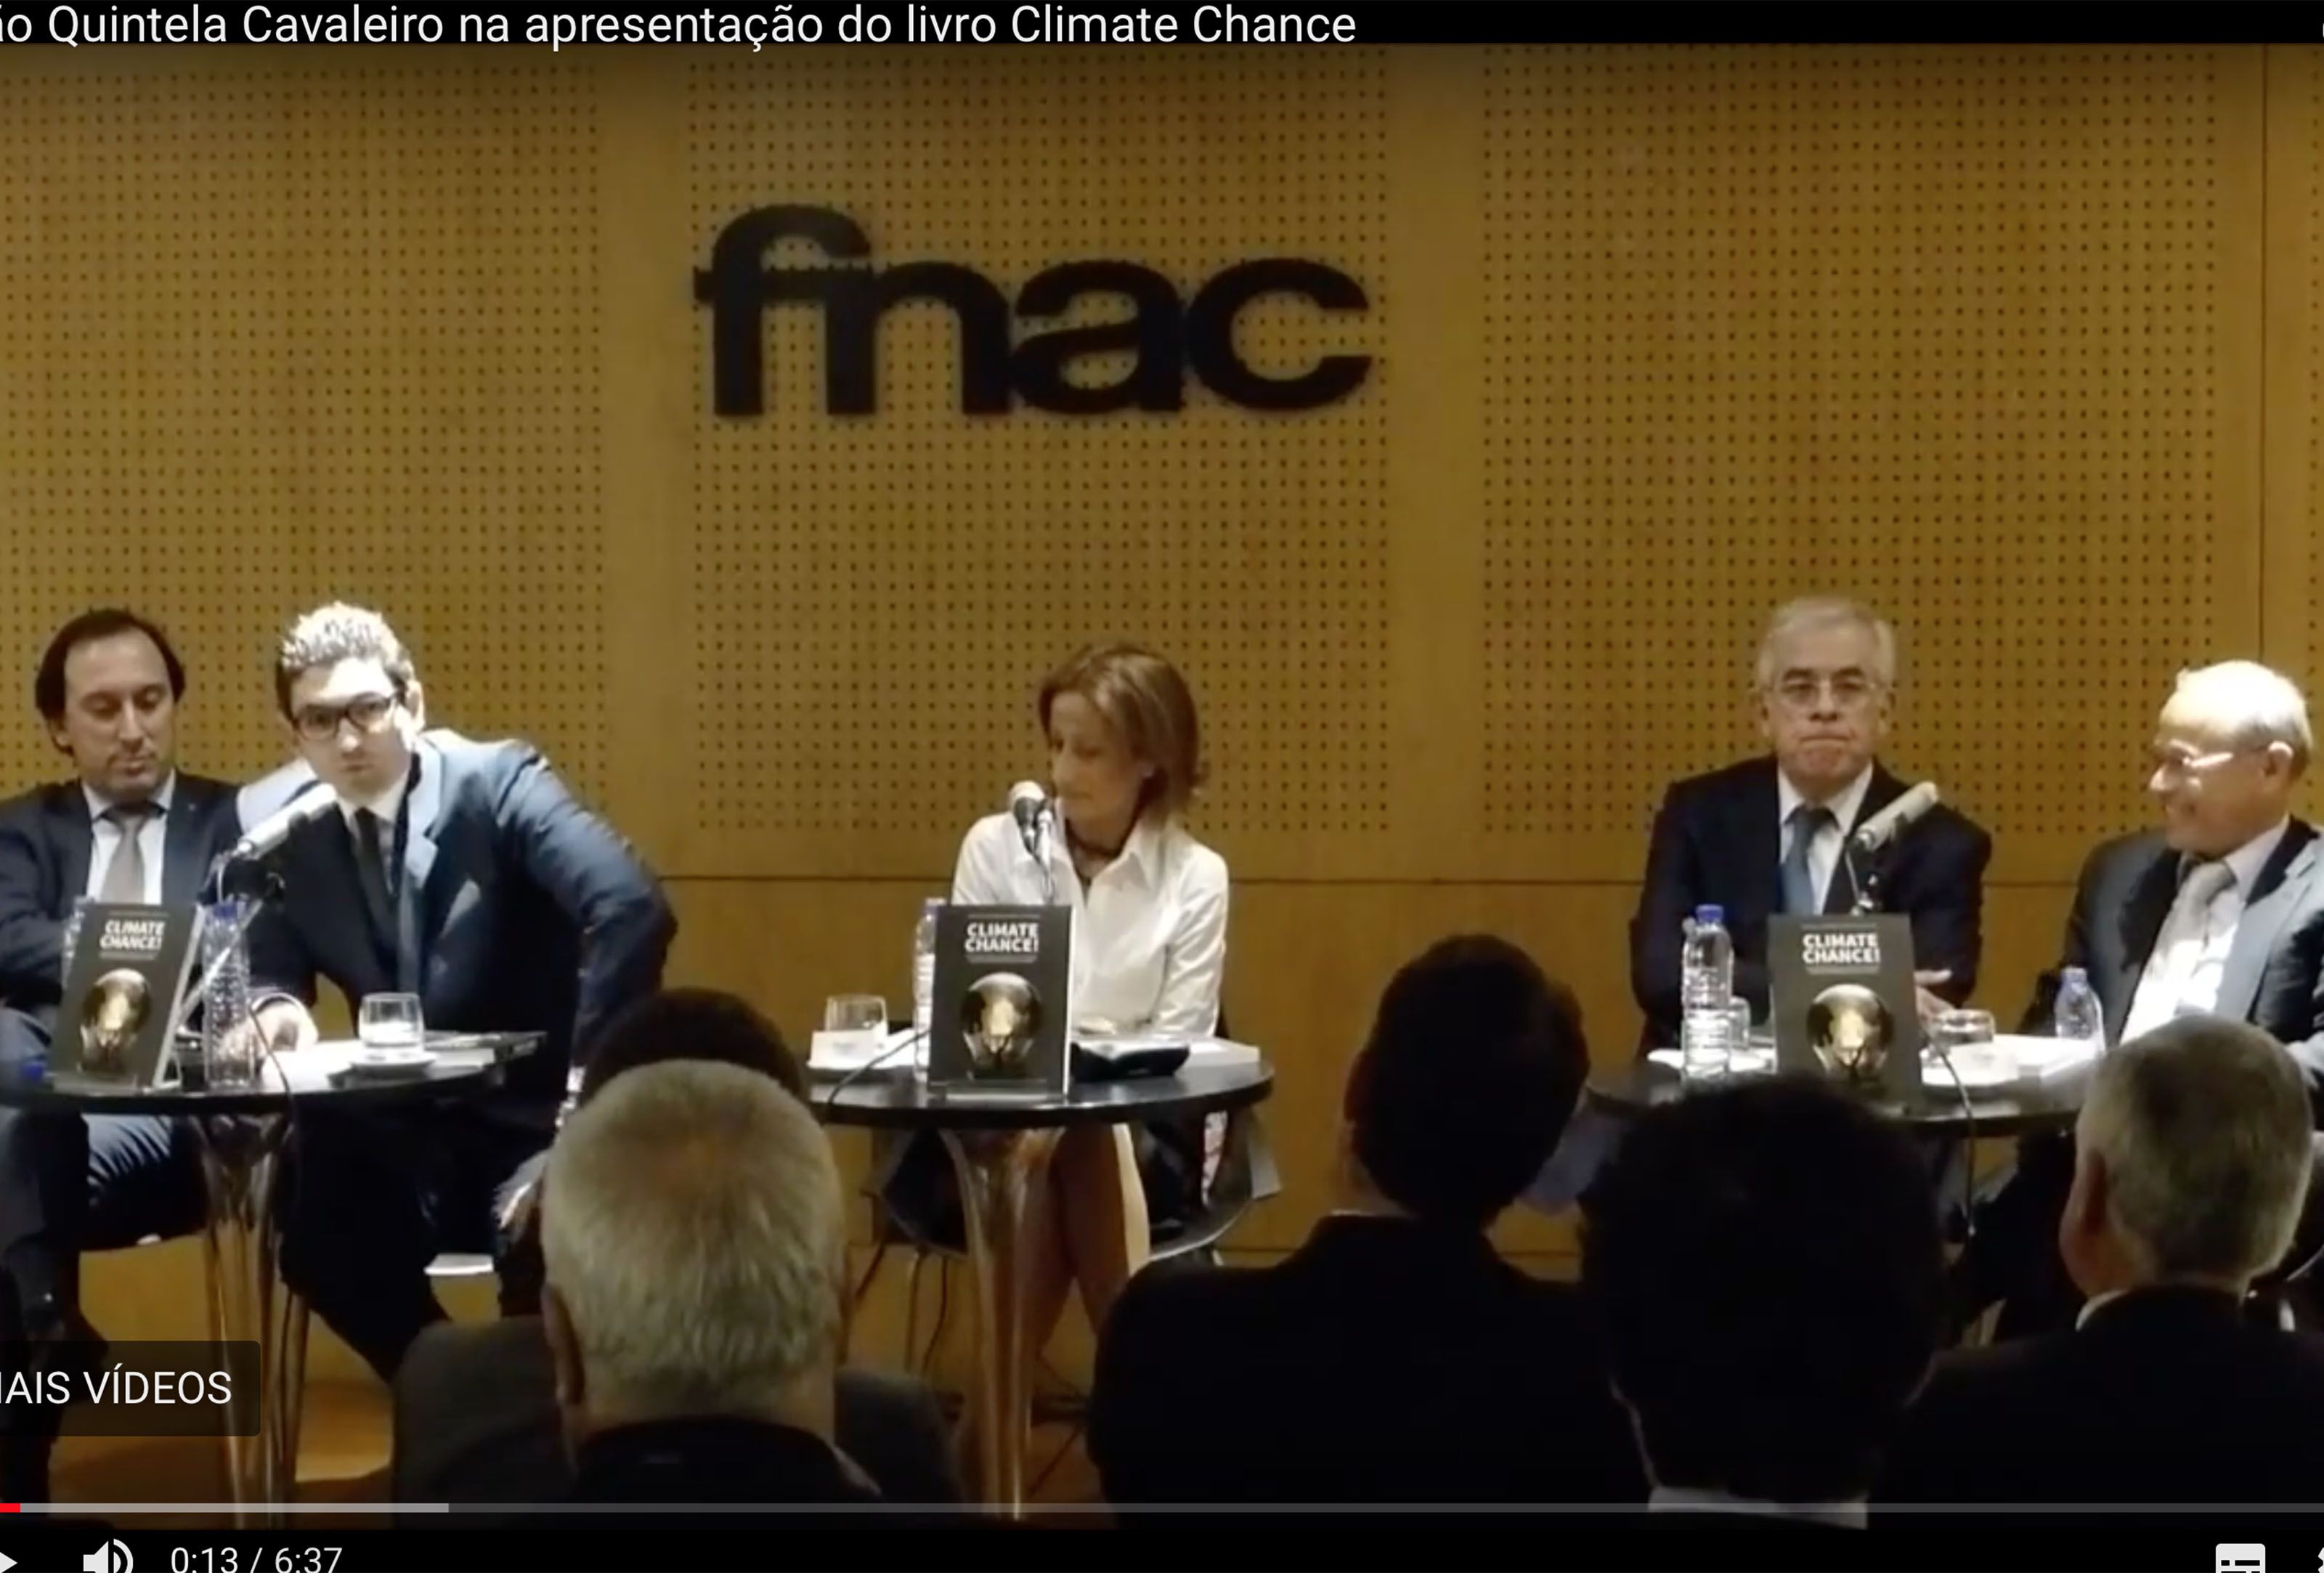 João Quintela Cavaleiro na apresentação do livro Climate Chance